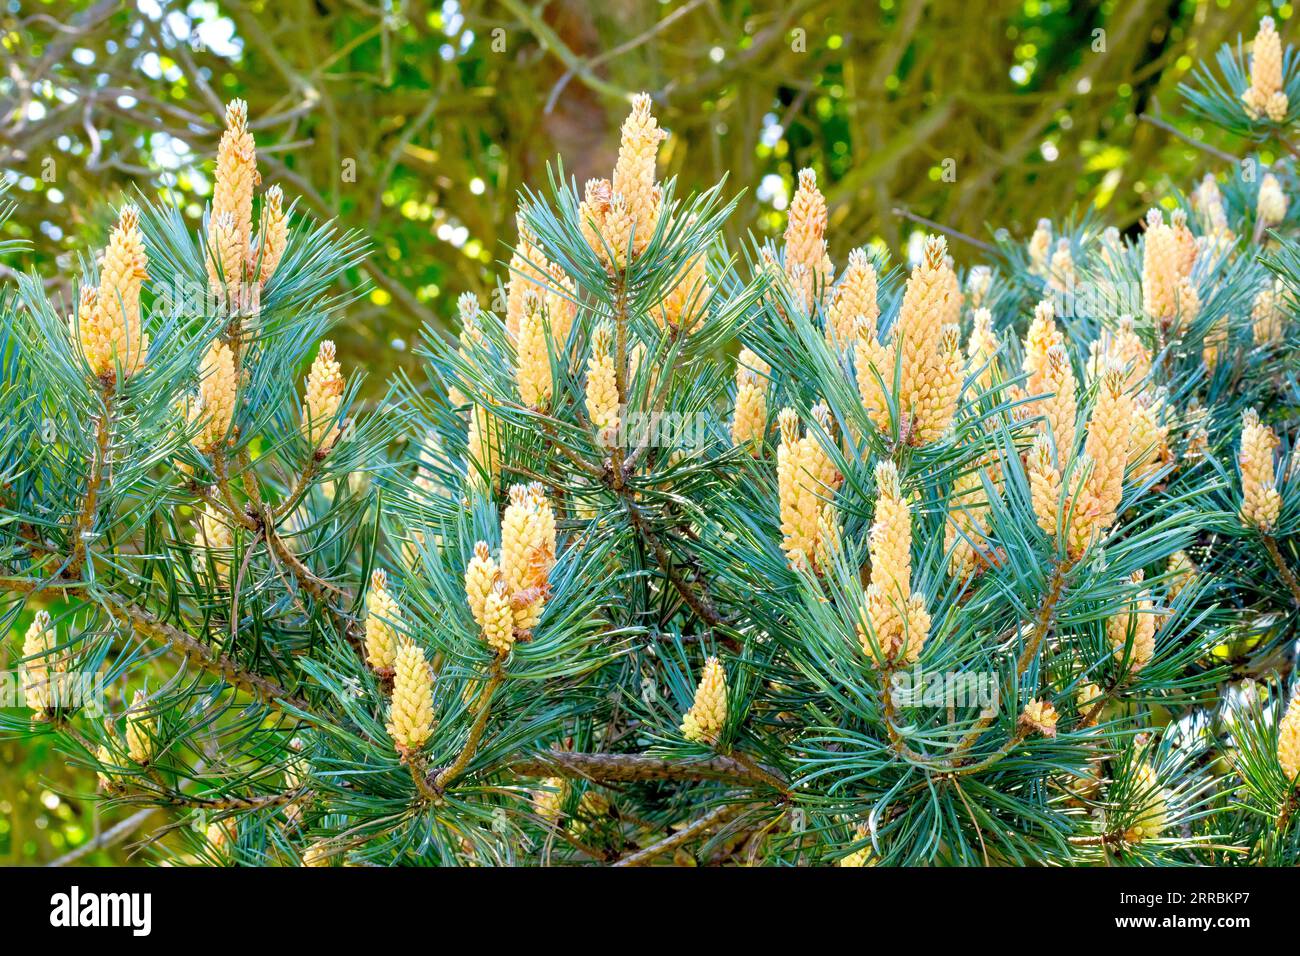 Pin sylvestre (pinus sylvestris), gros plan d'une branche de l'arbre commun couvert d'épis de fleurs mâles. Banque D'Images